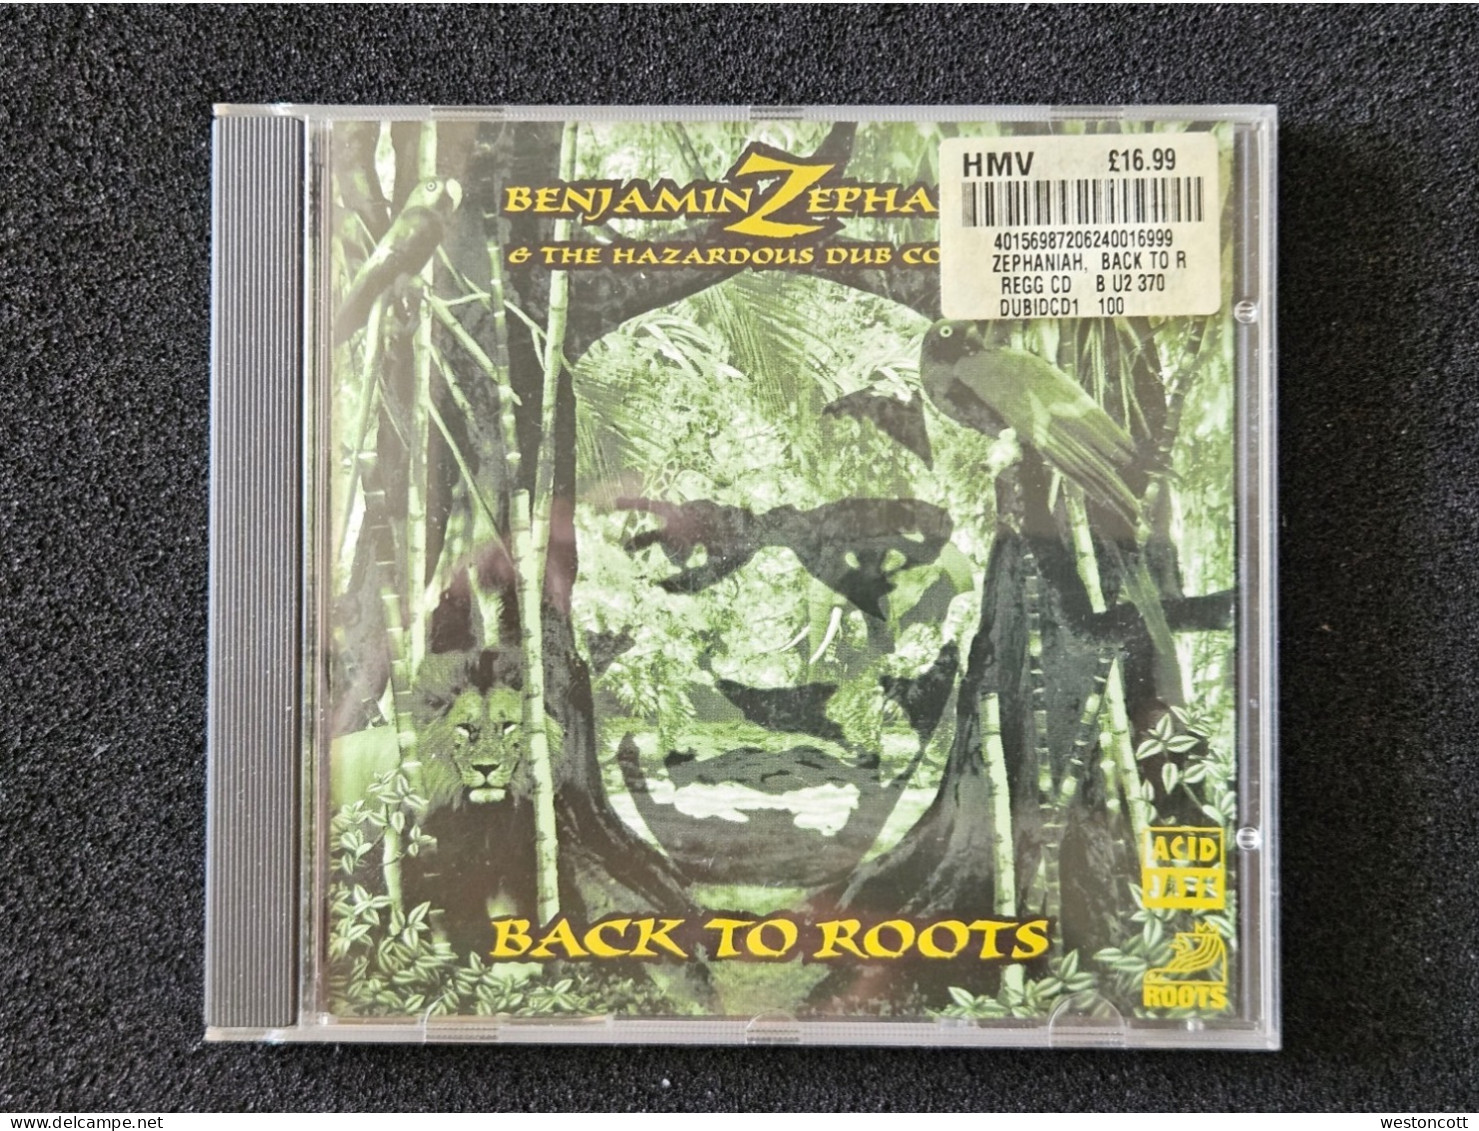 CD. Back To Roots, Benjamin Zephaniah And The Hazardous Dub Company - Reggae